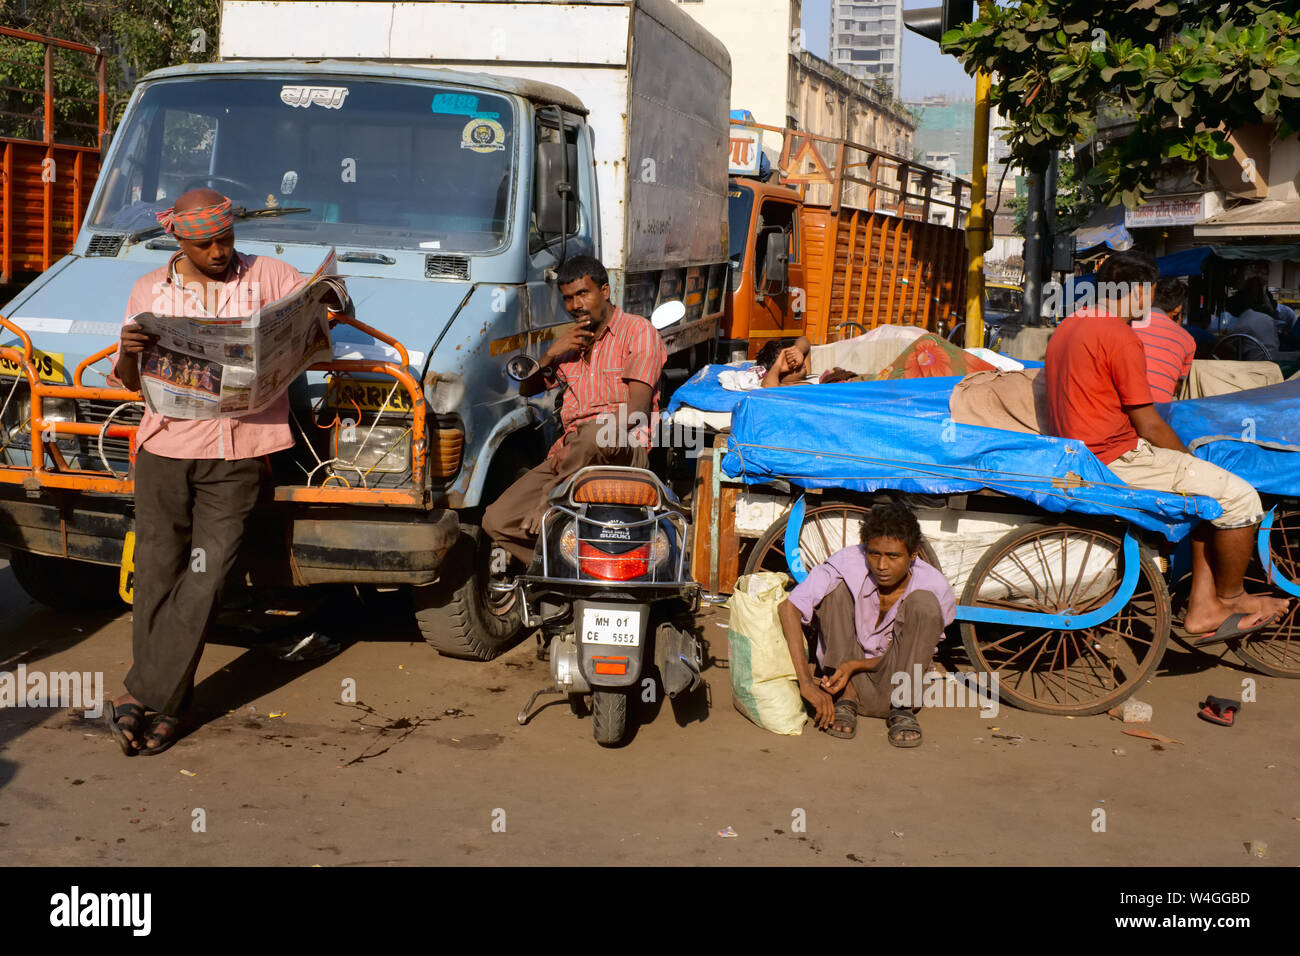 Les chauffeurs de camions et leurs auxiliaires, prendre du repos dans un quartier pauvre à Mumbai, Inde Banque D'Images